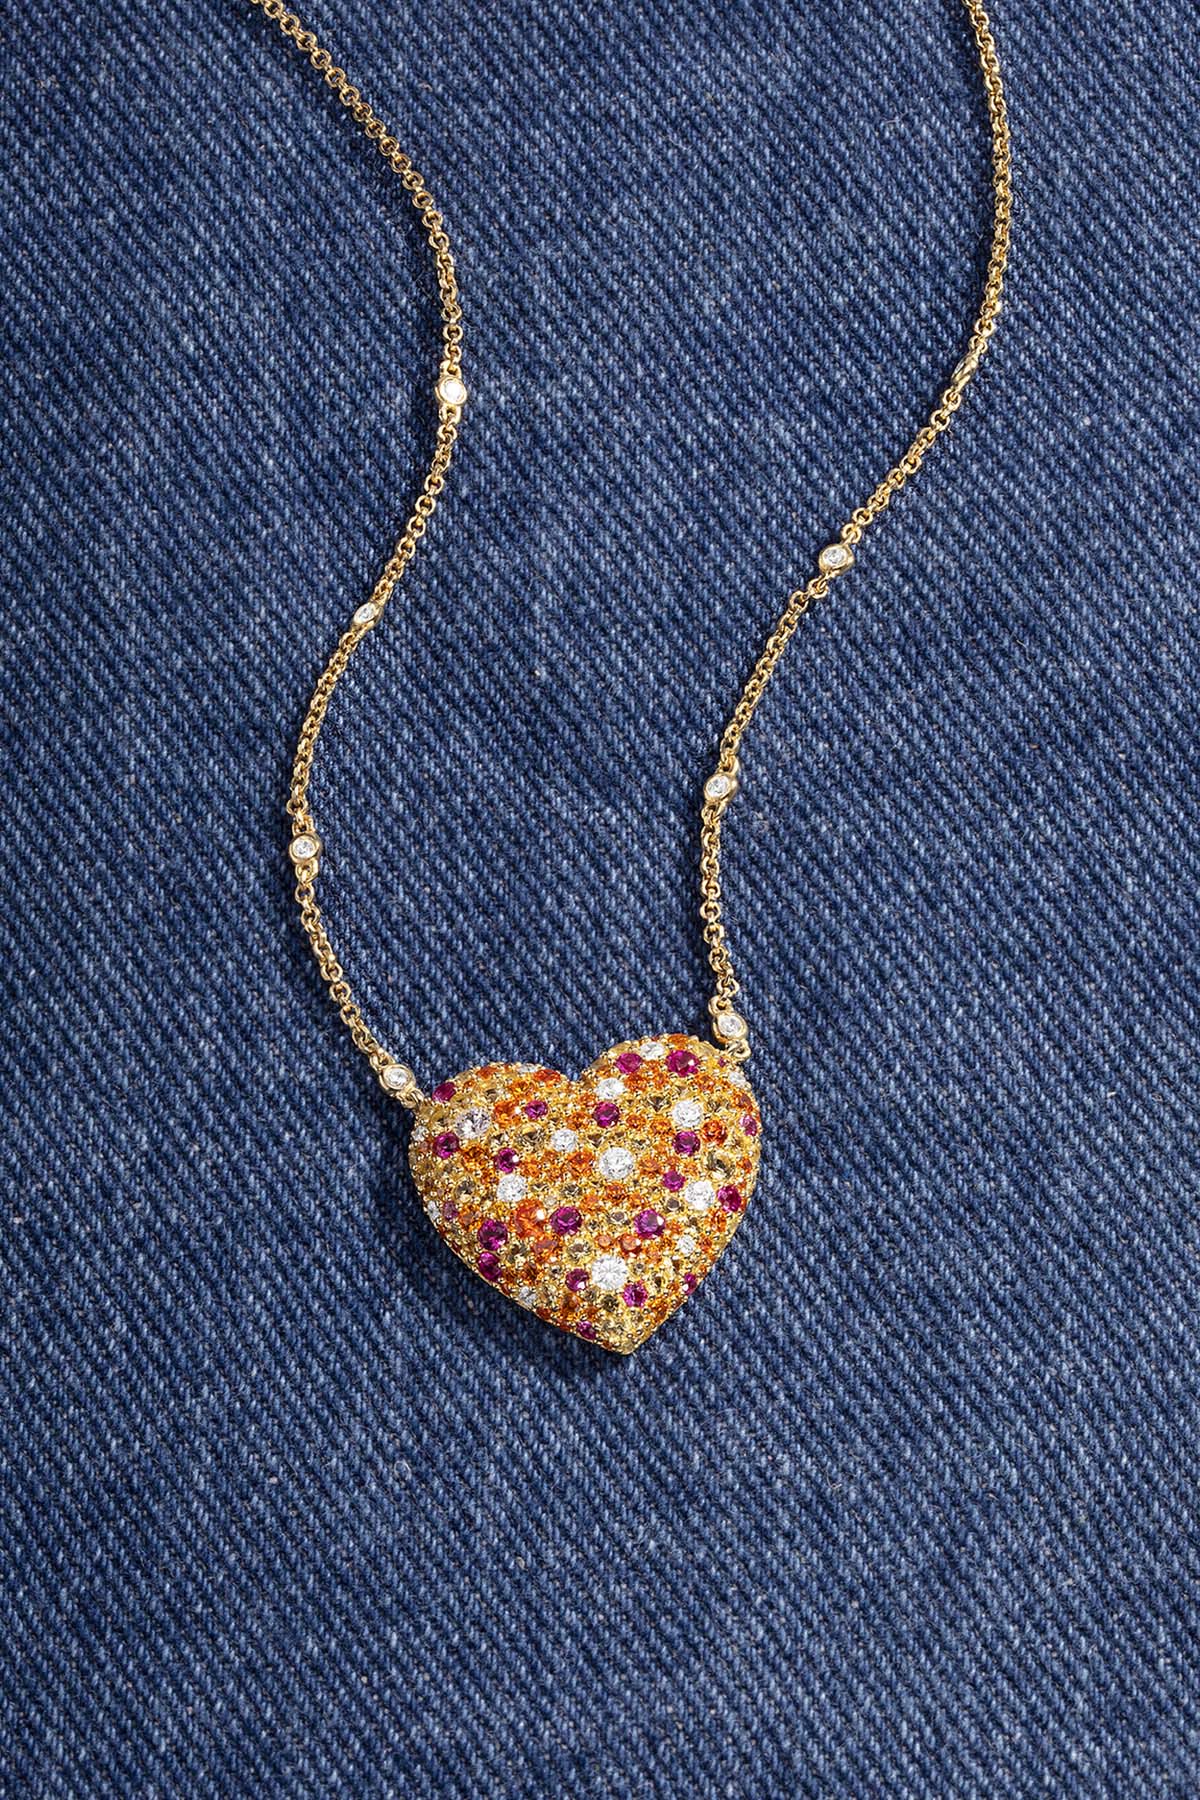 APM Monaco Multicolor Heart Adjustable Necklace in Yellow Gold